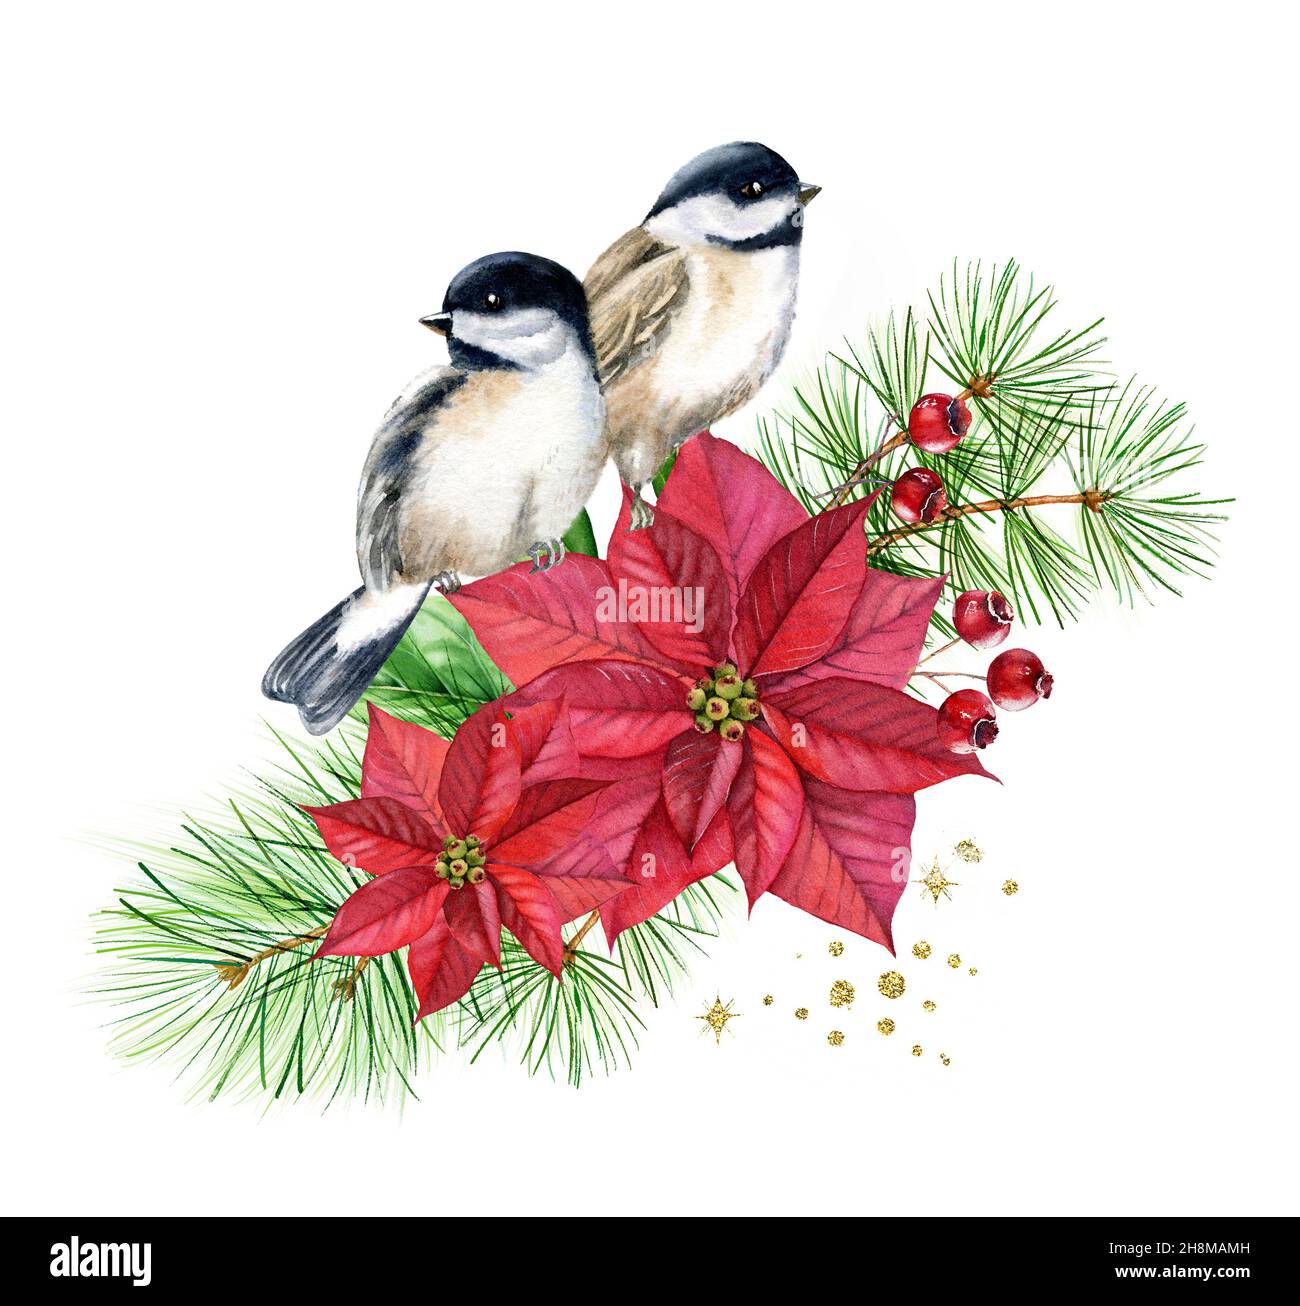 Aquarell Vögel auf Blumenstrauß mit roten Blumen. Weihnachtskarte mit Kiefernbaum, Weihnachtsstern, goldener Glitterfolie. Botanische Blumendarstellung für Stockfoto